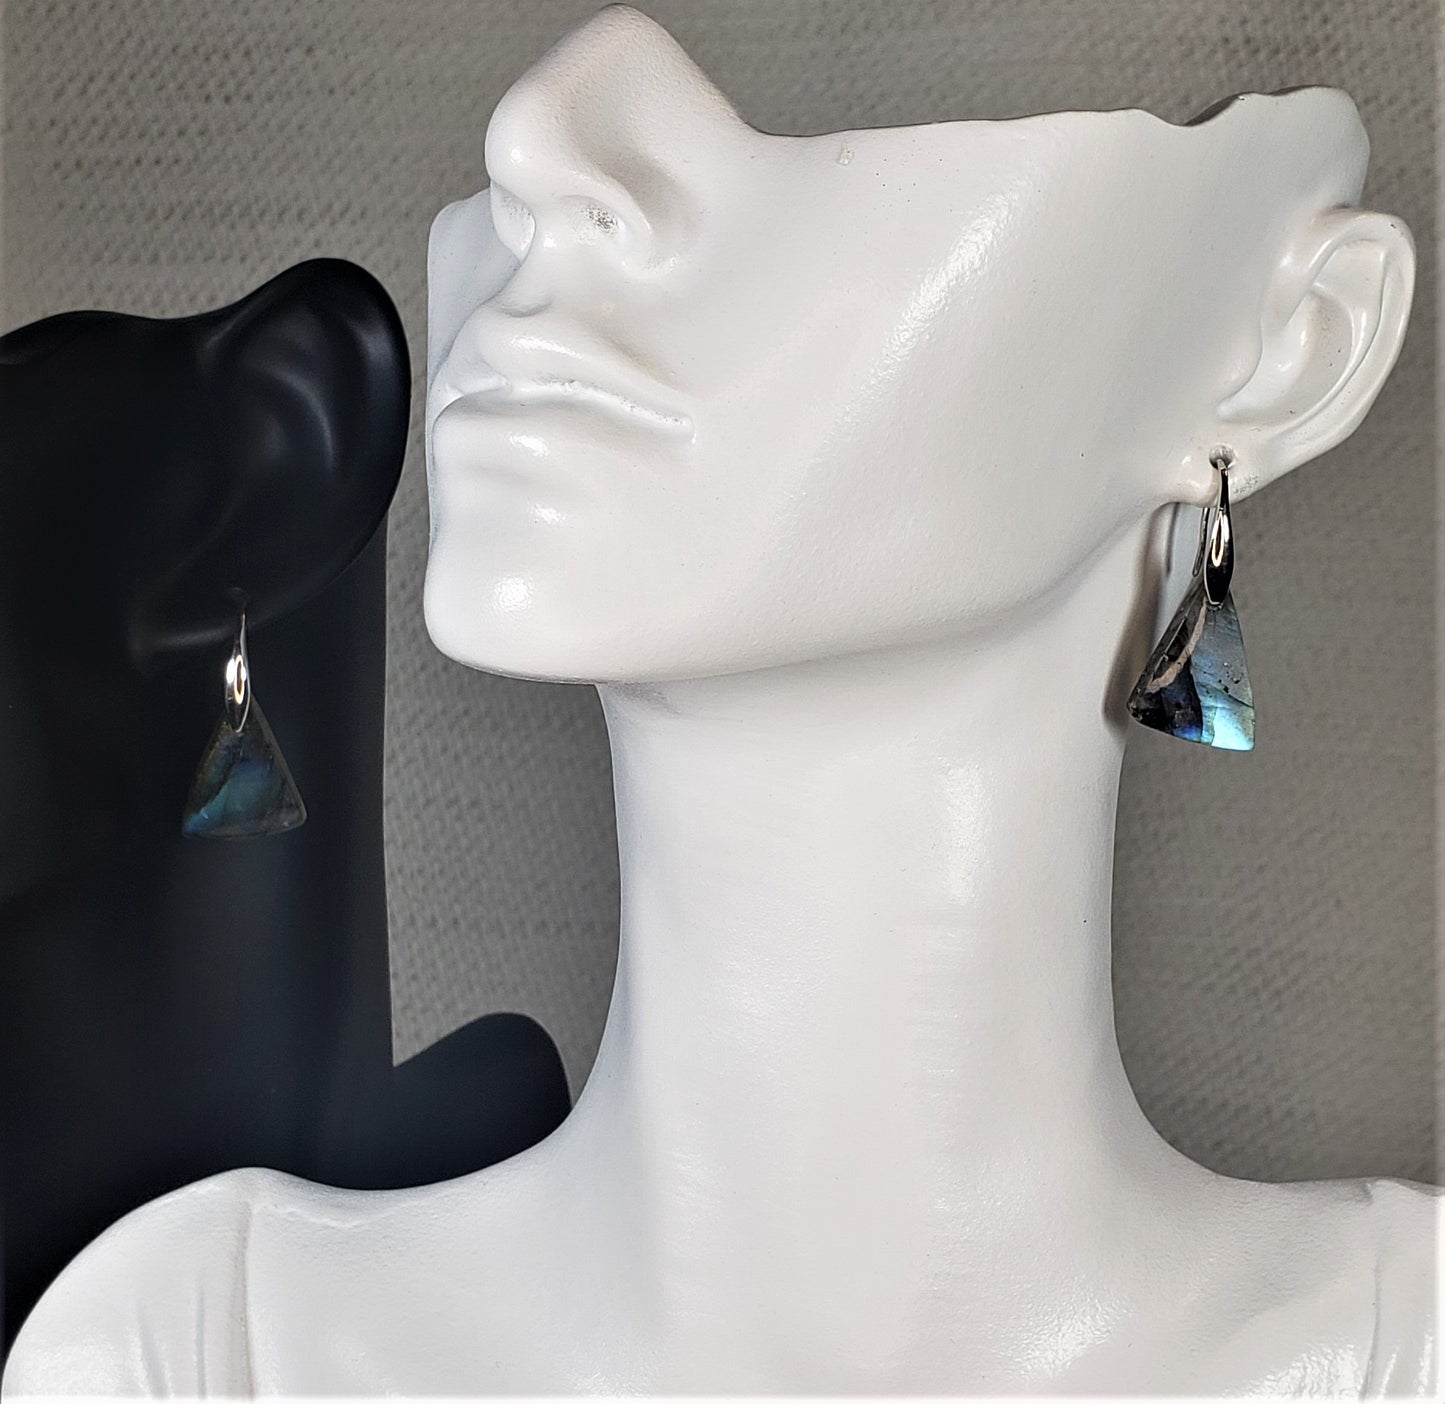 Labradorite Earrings